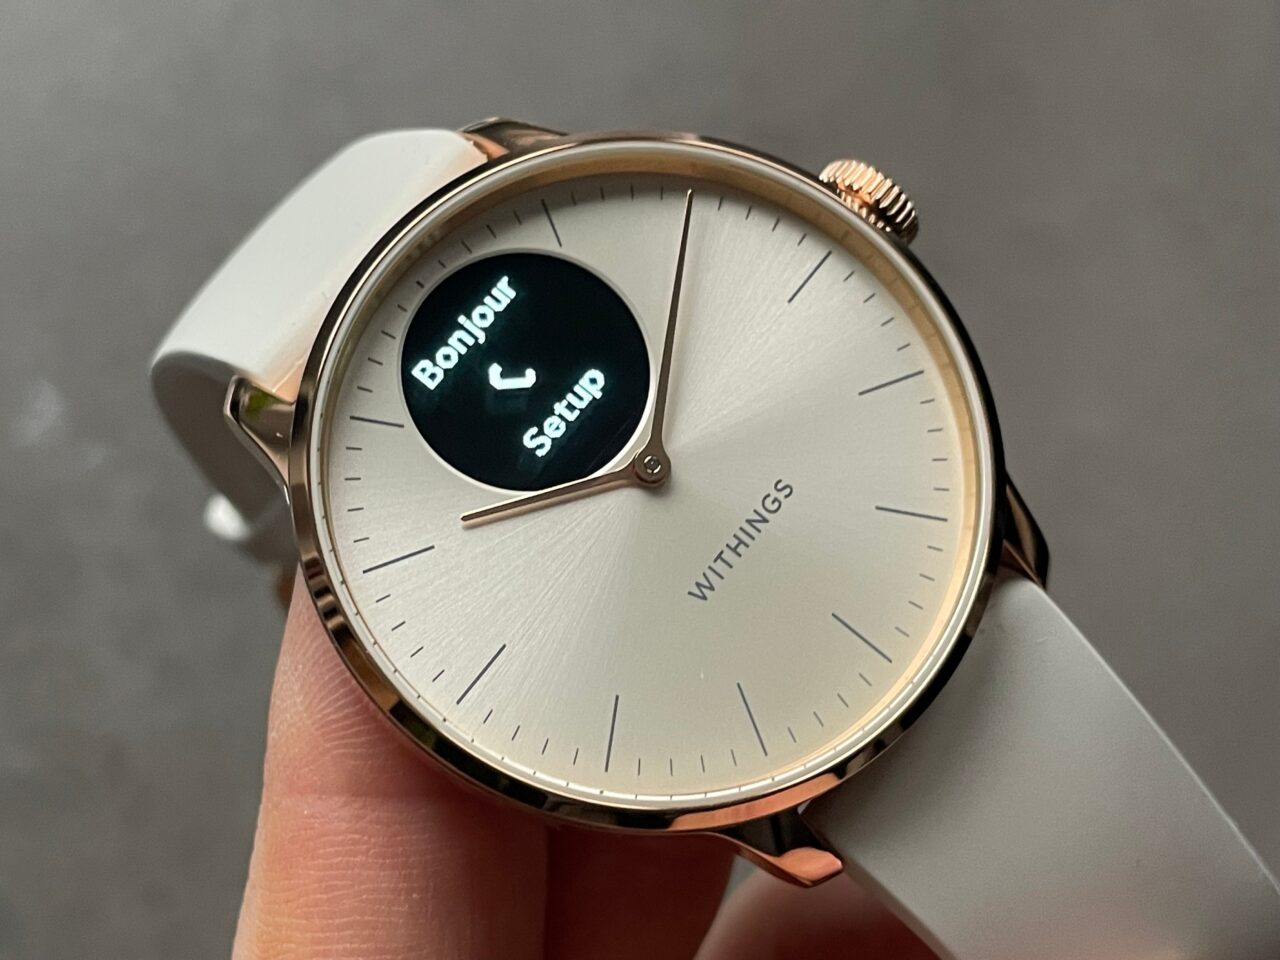 Zegarek z analogową tarczą w kolorze jasnoszarym i różowo-złotą obudową, wyświetlający cyfrowo napis "Bonjour Setup" na małym okienku OLED, z logo "WITHINGS" na dole tarczy.